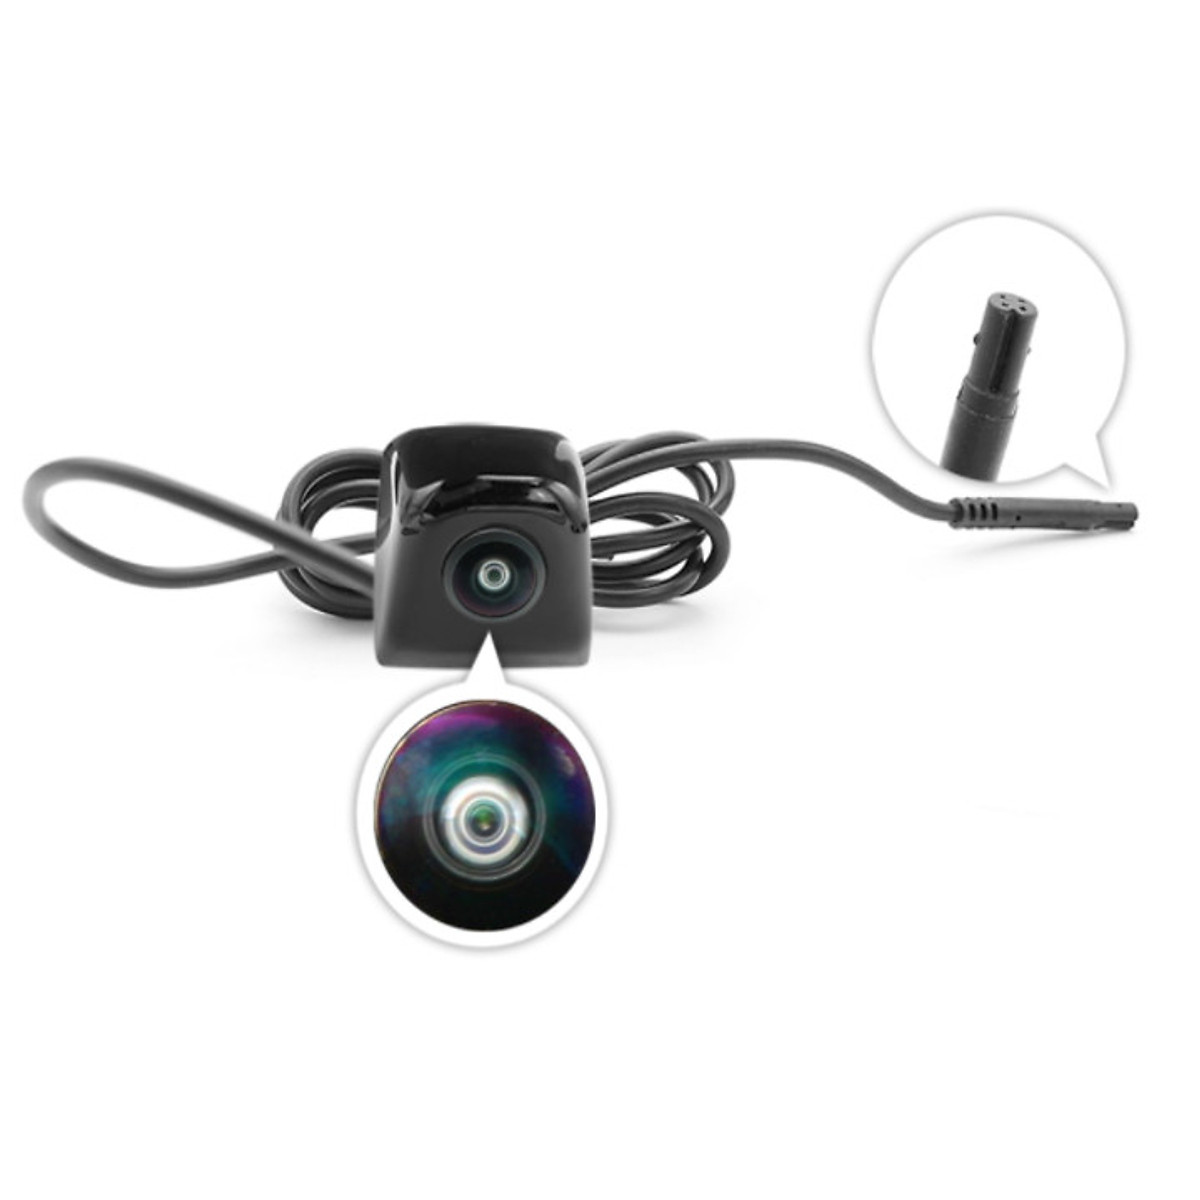 Camera lùi ô tô AHD 1080P: Để đảm bảo an toàn khi lái xe, camera lùi là một thiết bị không thể thiếu. Hãy cùng tìm hiểu về camera lùi ô tô AHD 1080P, một sản phẩm chất lượng cao với hình ảnh sắc nét và độ phân giải cao. Giờ đây, bạn có thể yên tâm lái xe hơn bao giờ hết.